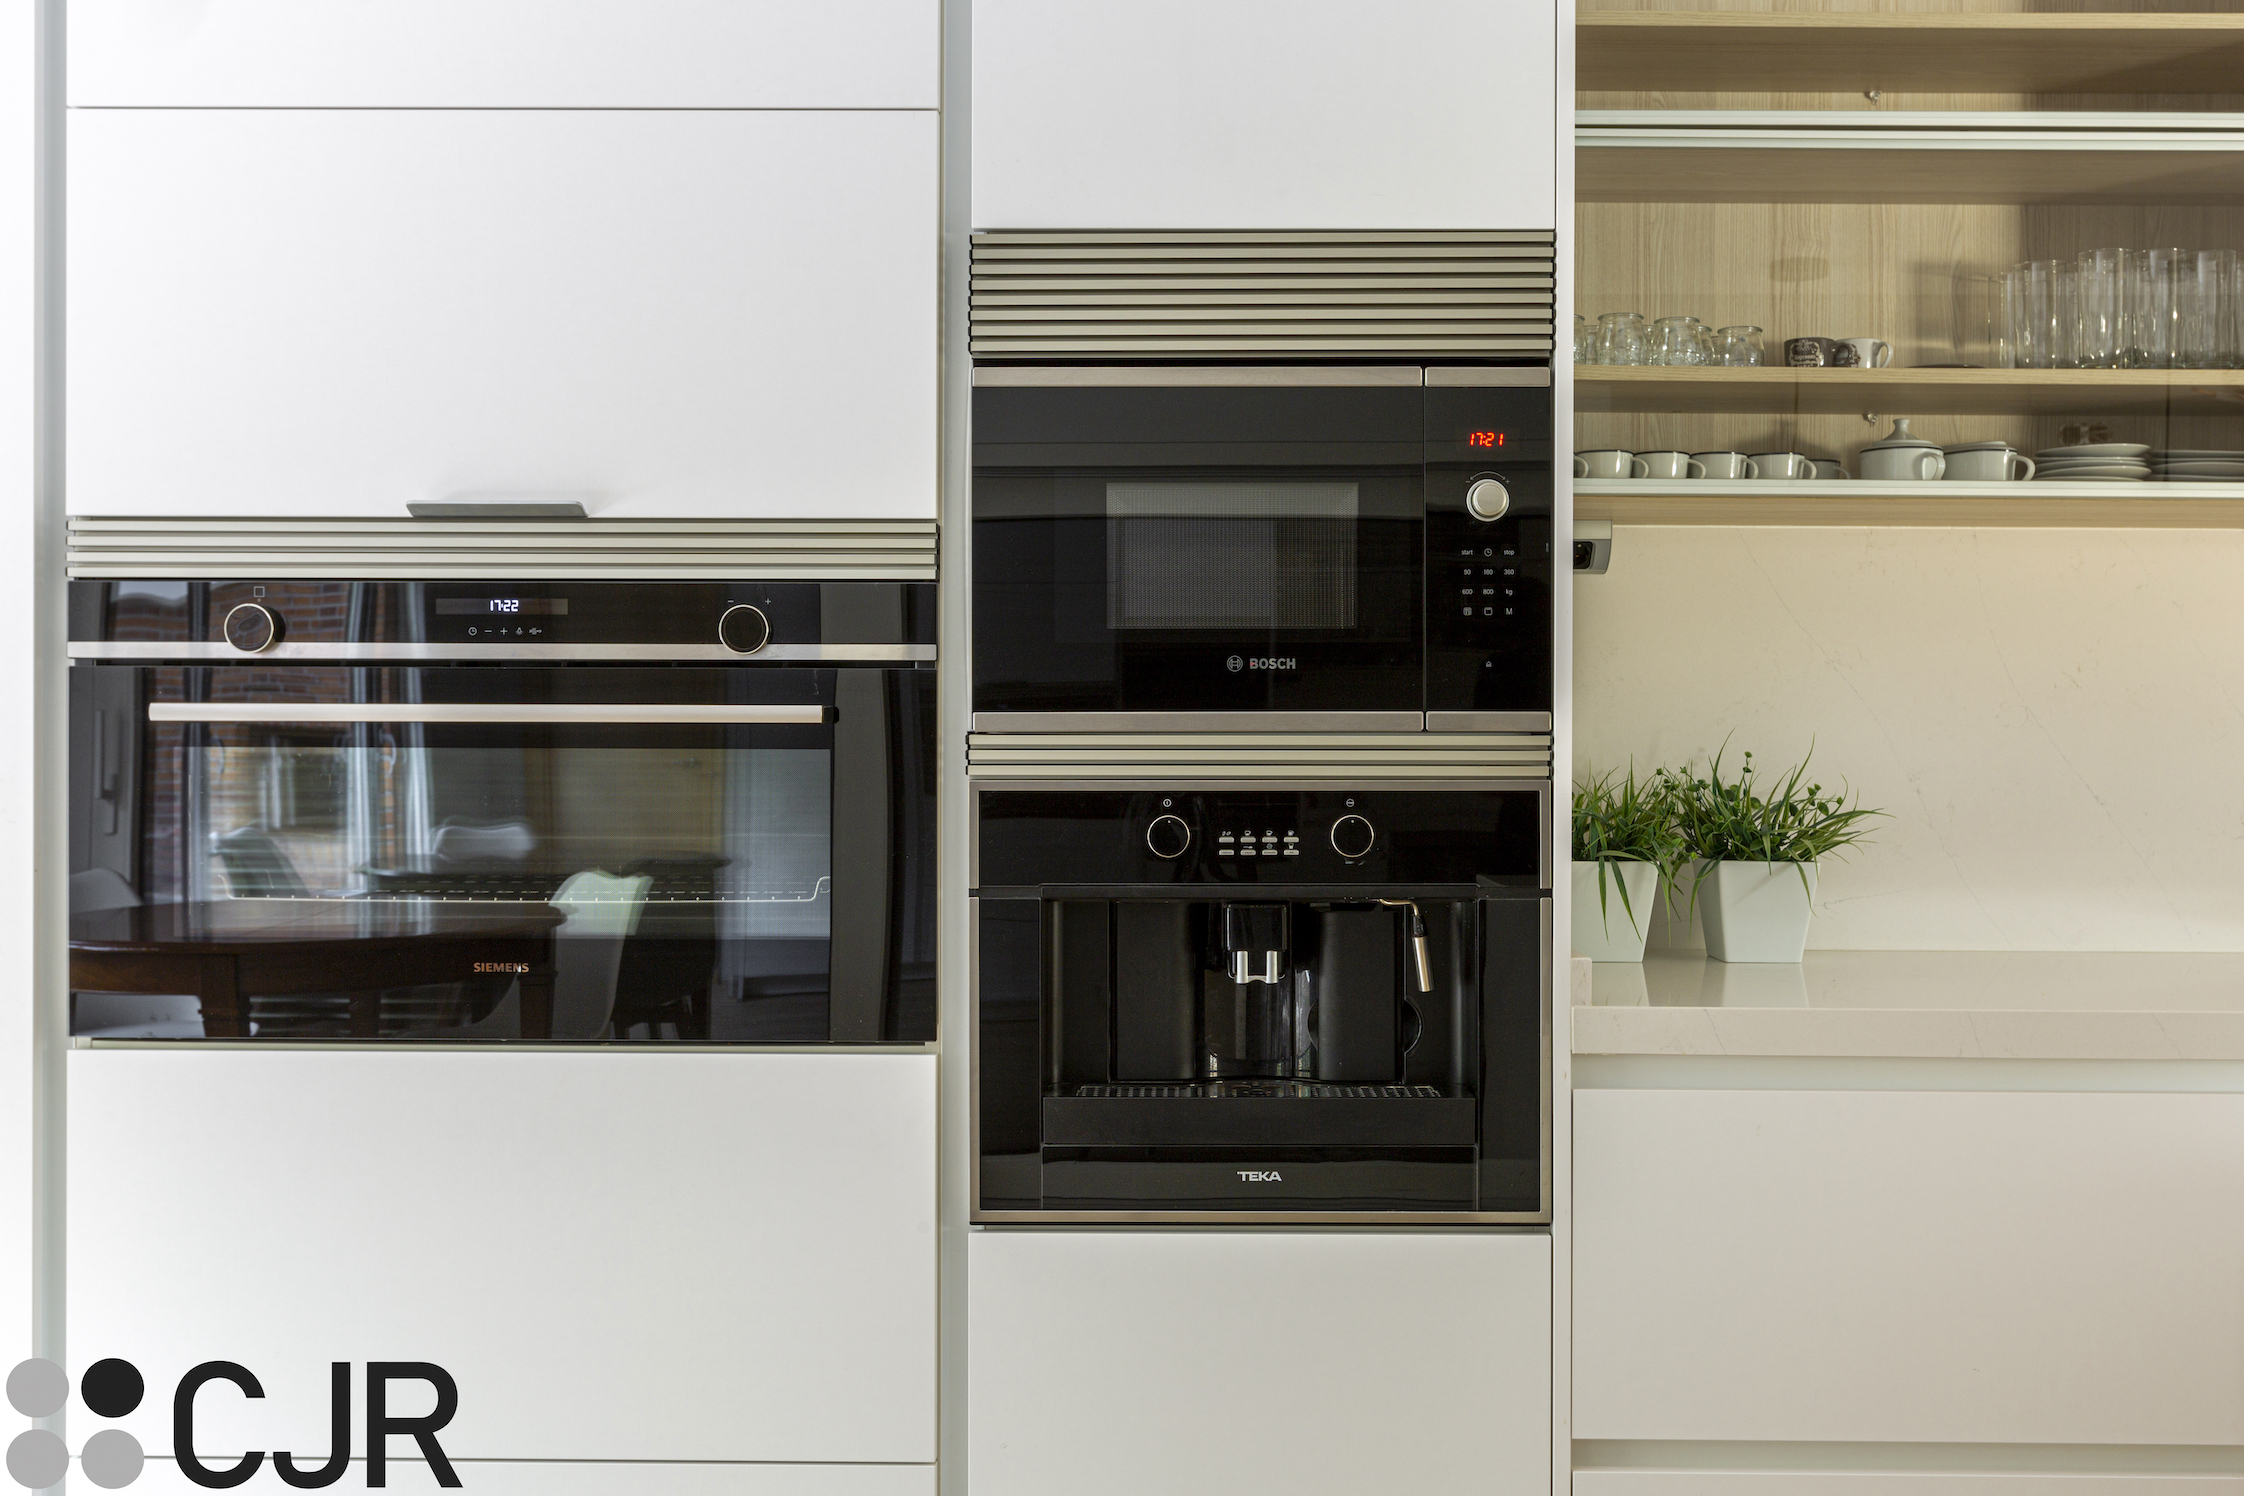 torres de cocina en blanco con electrodomesticos en negro cristal cjr